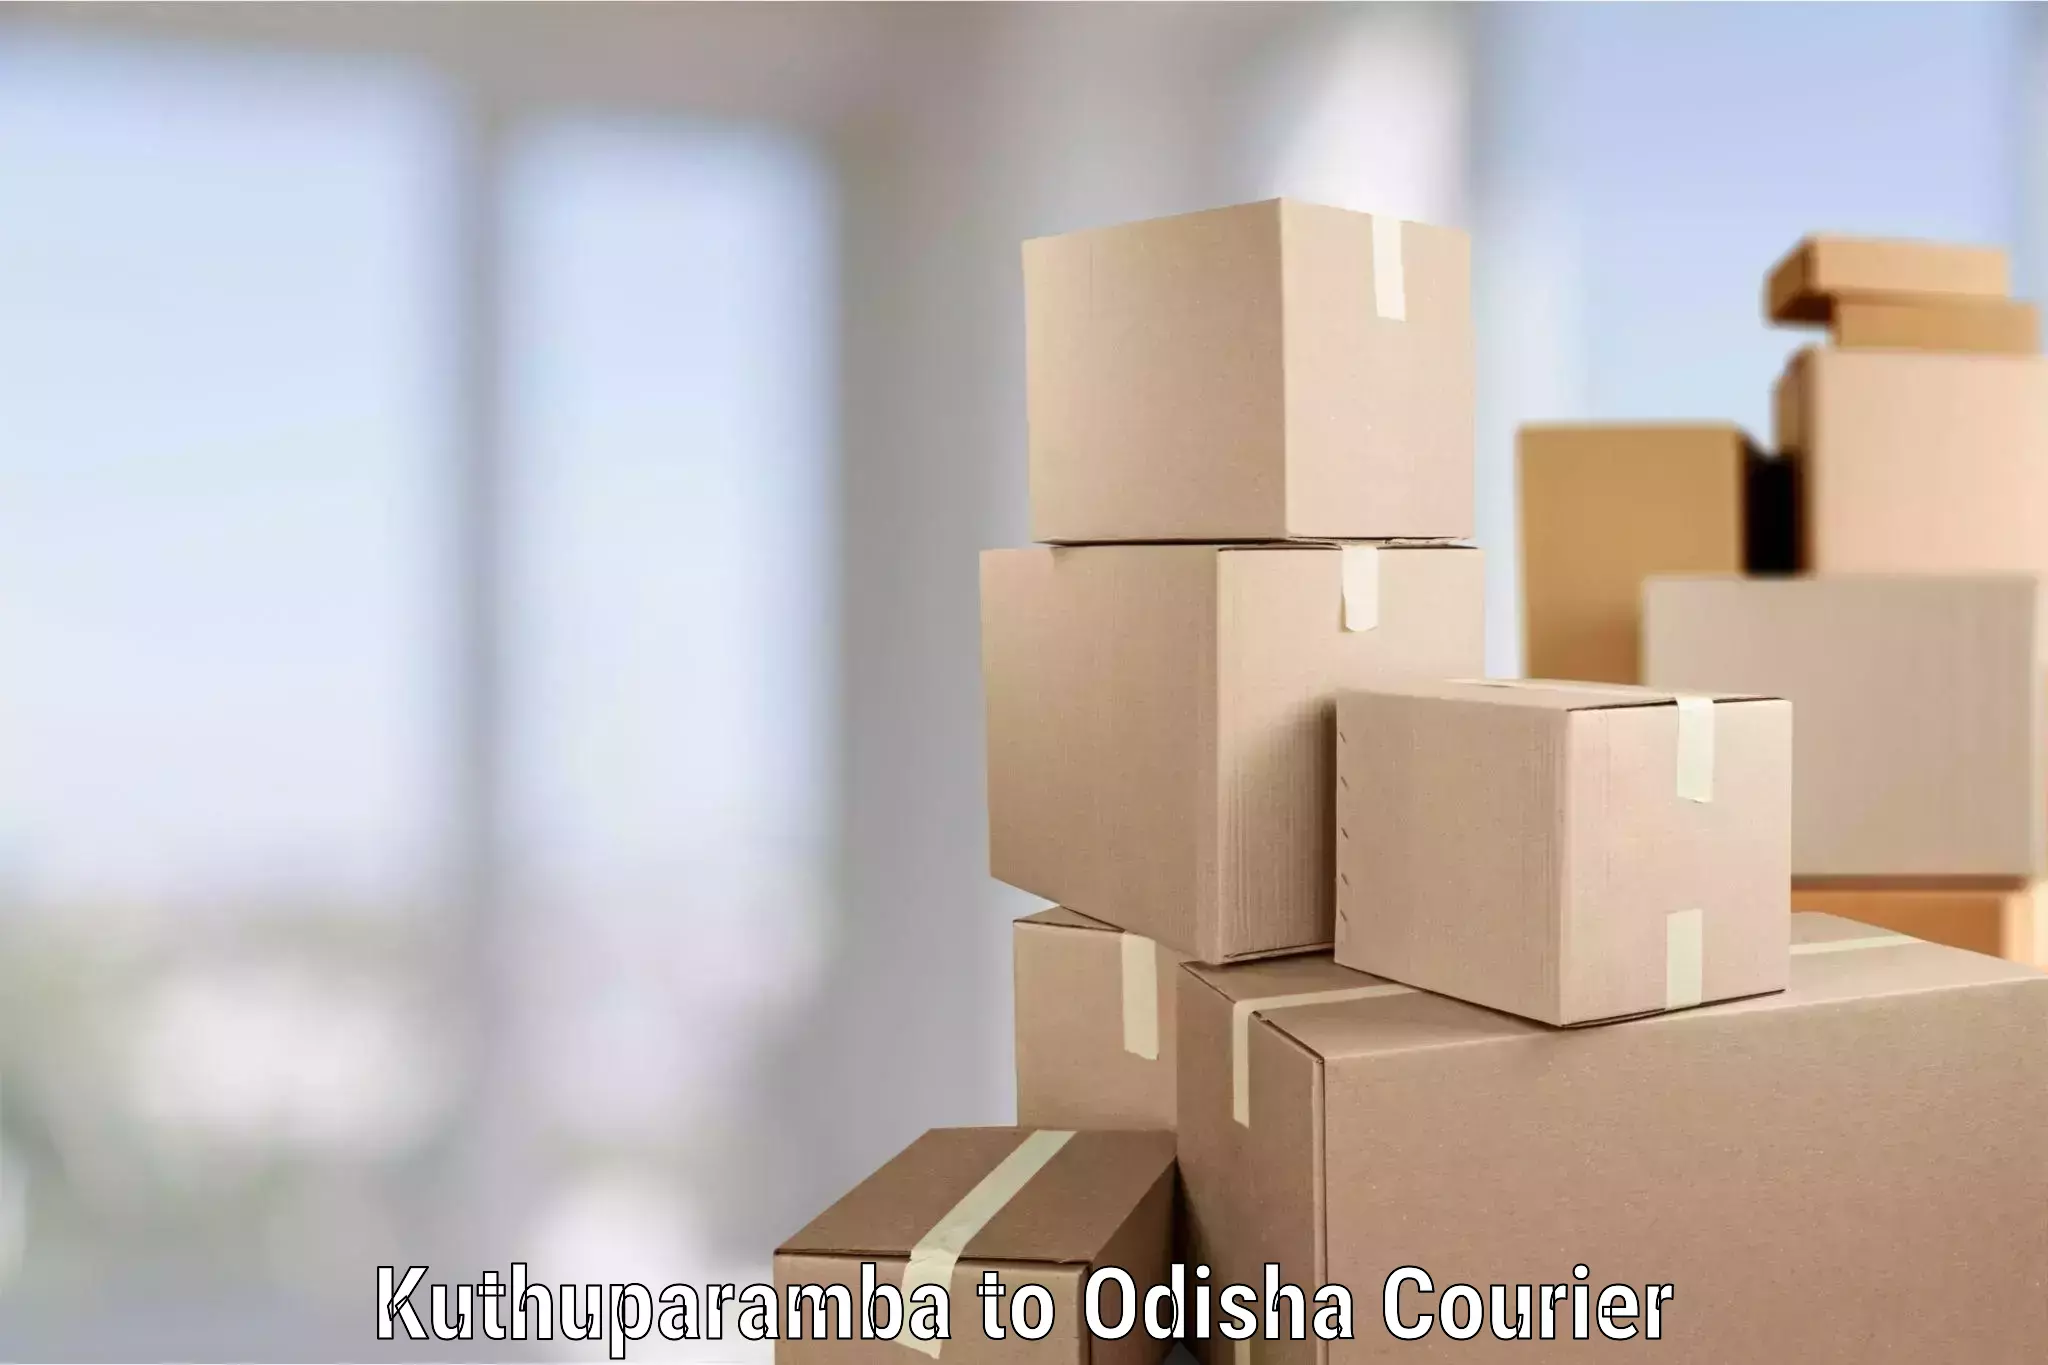 Professional packing and transport Kuthuparamba to Odisha